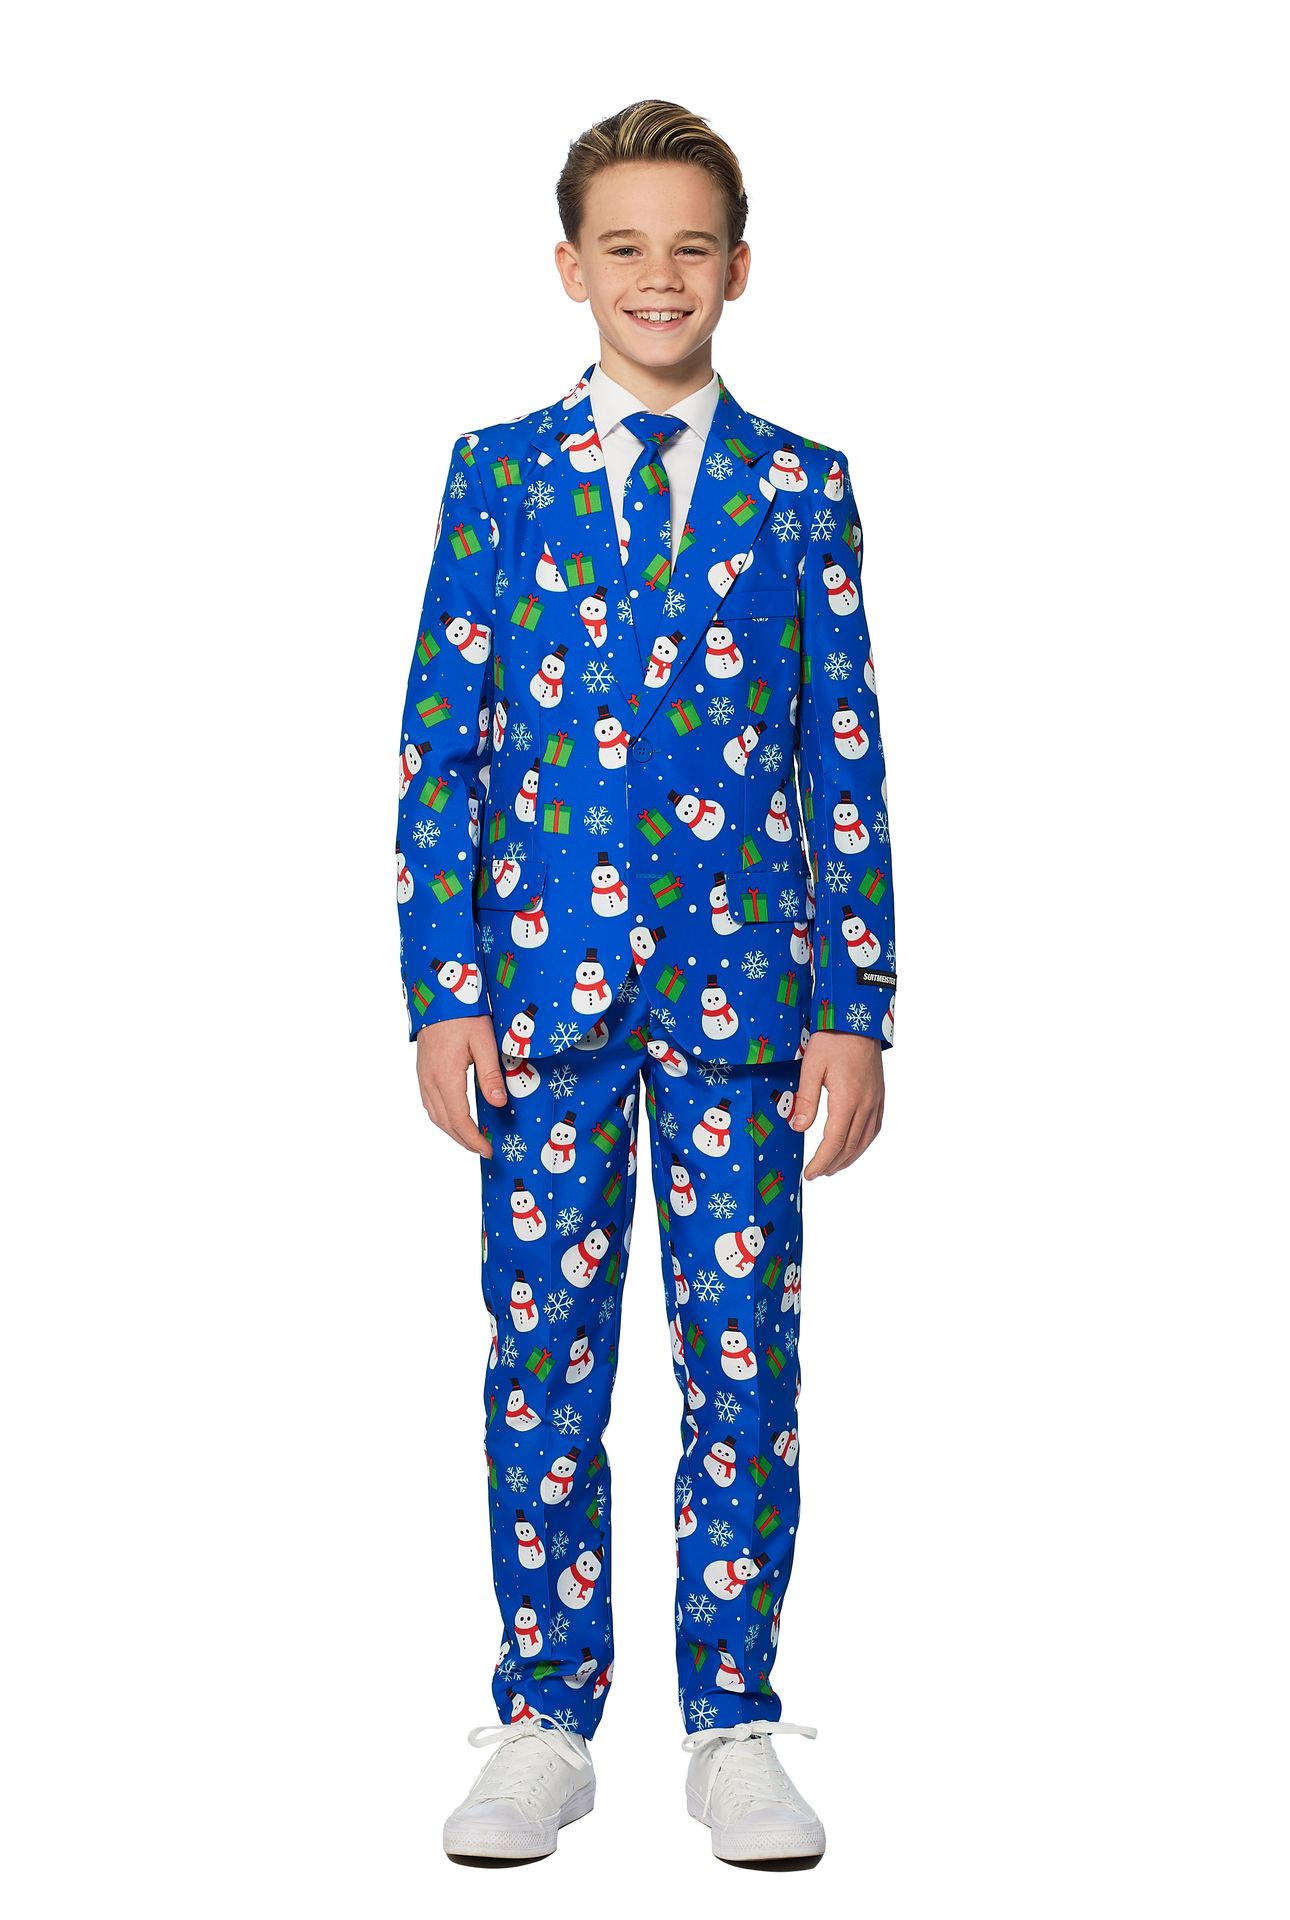 Blauwe sneeuwpop Suitmeister kostuum jongens